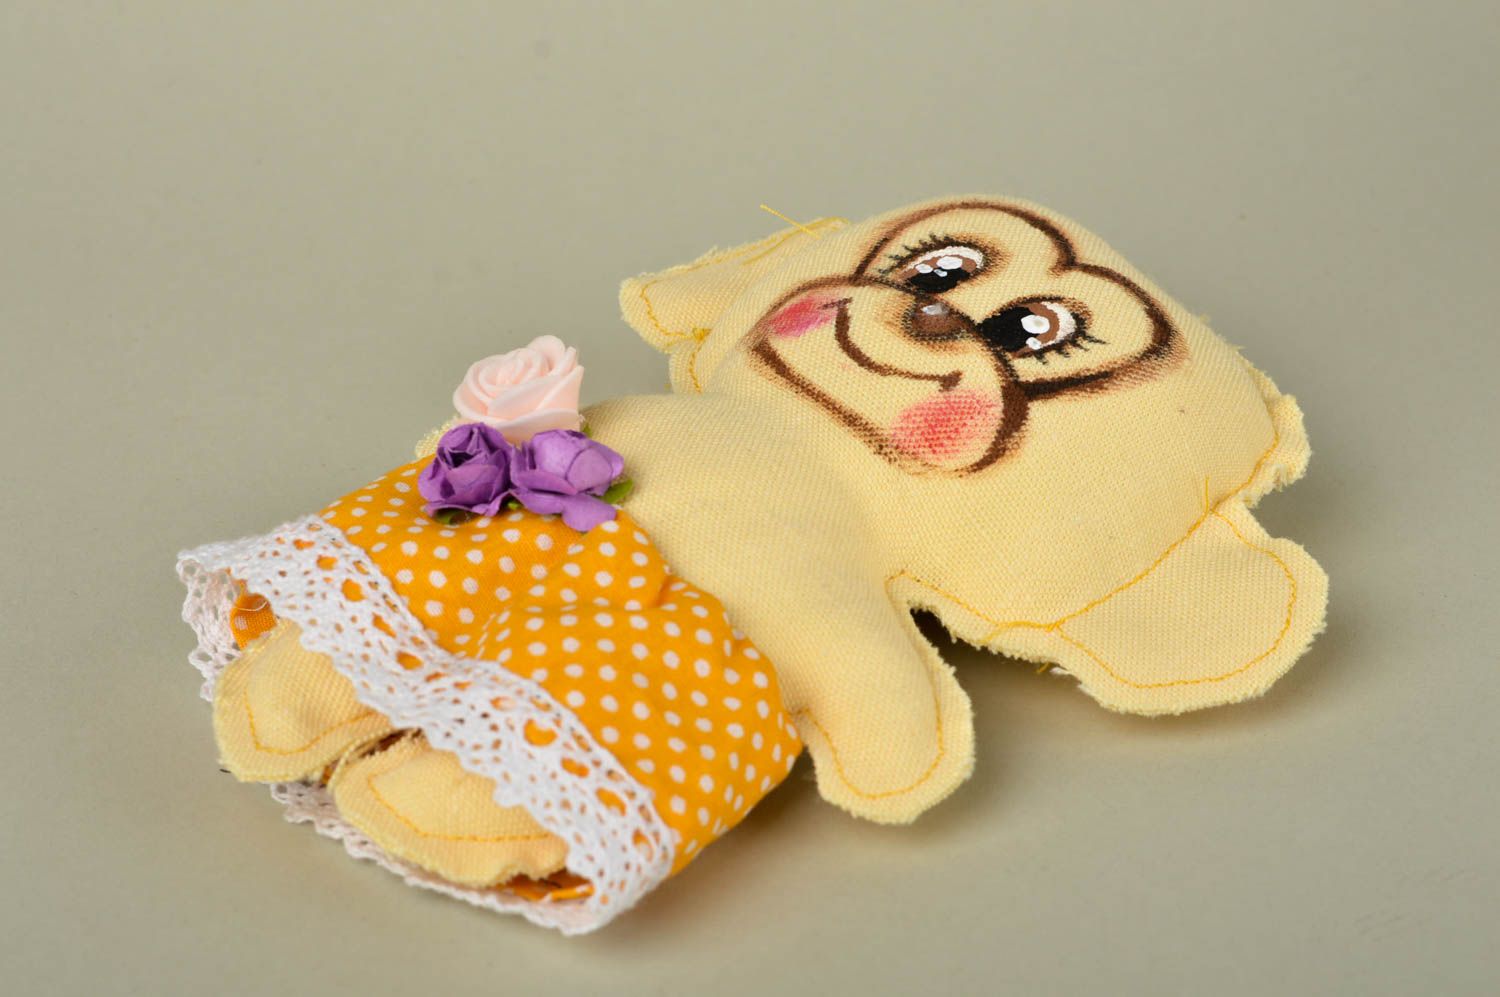 Игрушка ручной работы игрушка обезьянка в платье оригинальная игрушка из хлопка фото 3